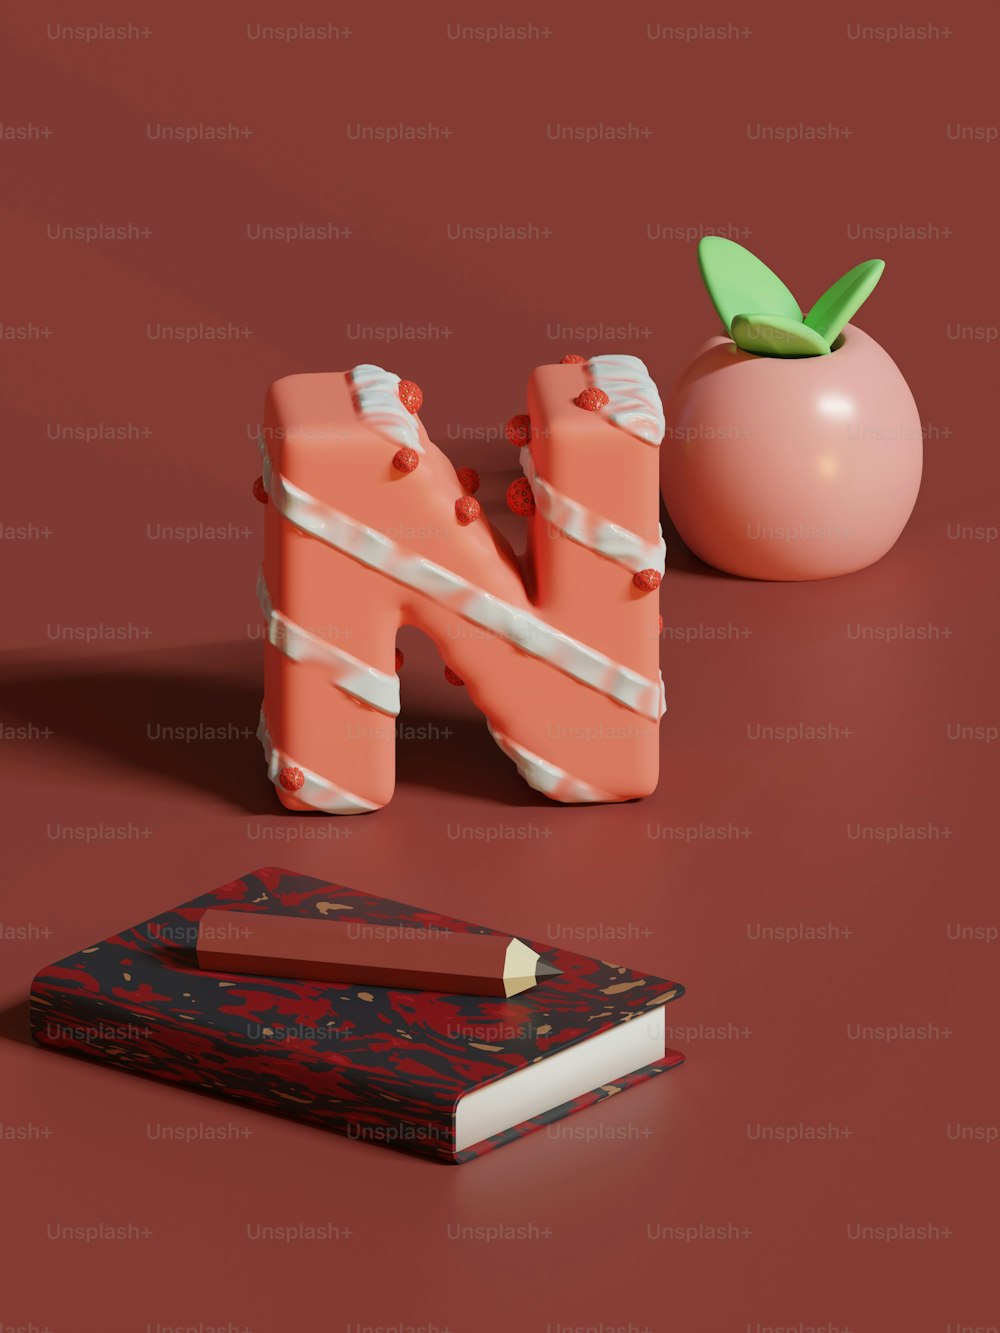 Ein Buch, Bleistift und Apfel auf roter Oberfläche